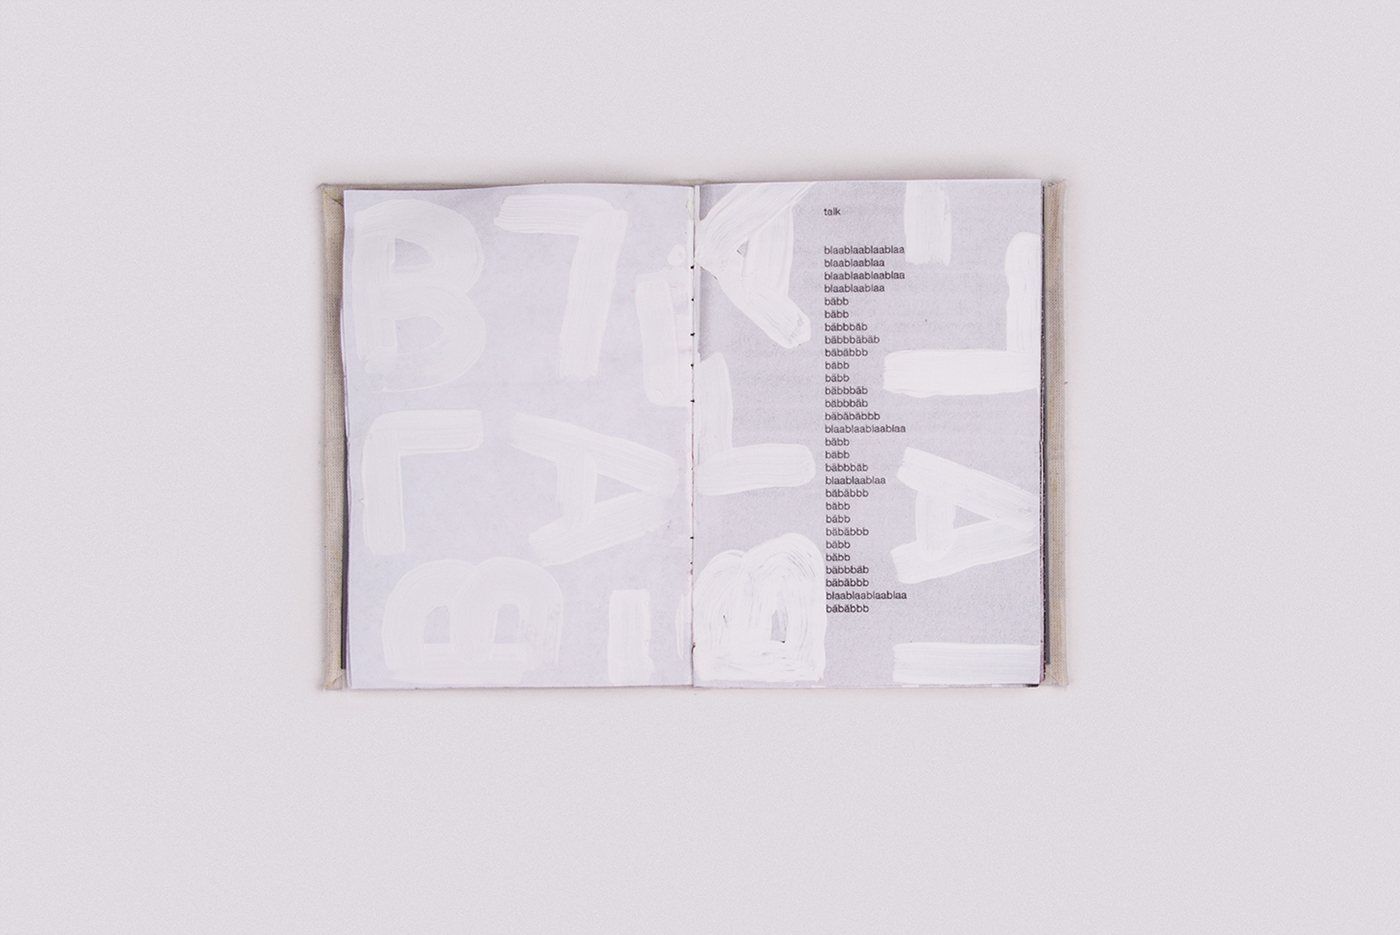 onebookaweek book design Reclam Ernst Jandl